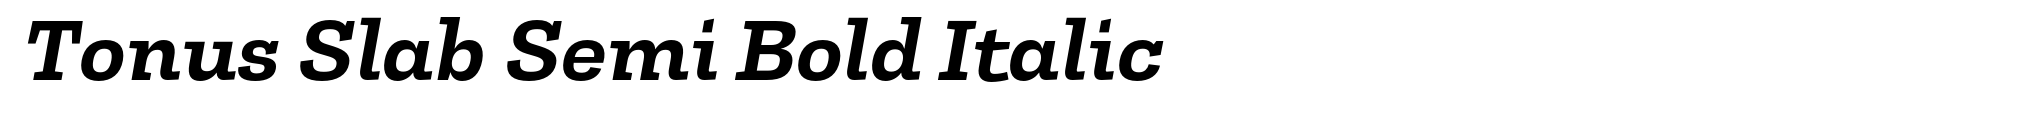 Tonus Slab Semi Bold Italic image